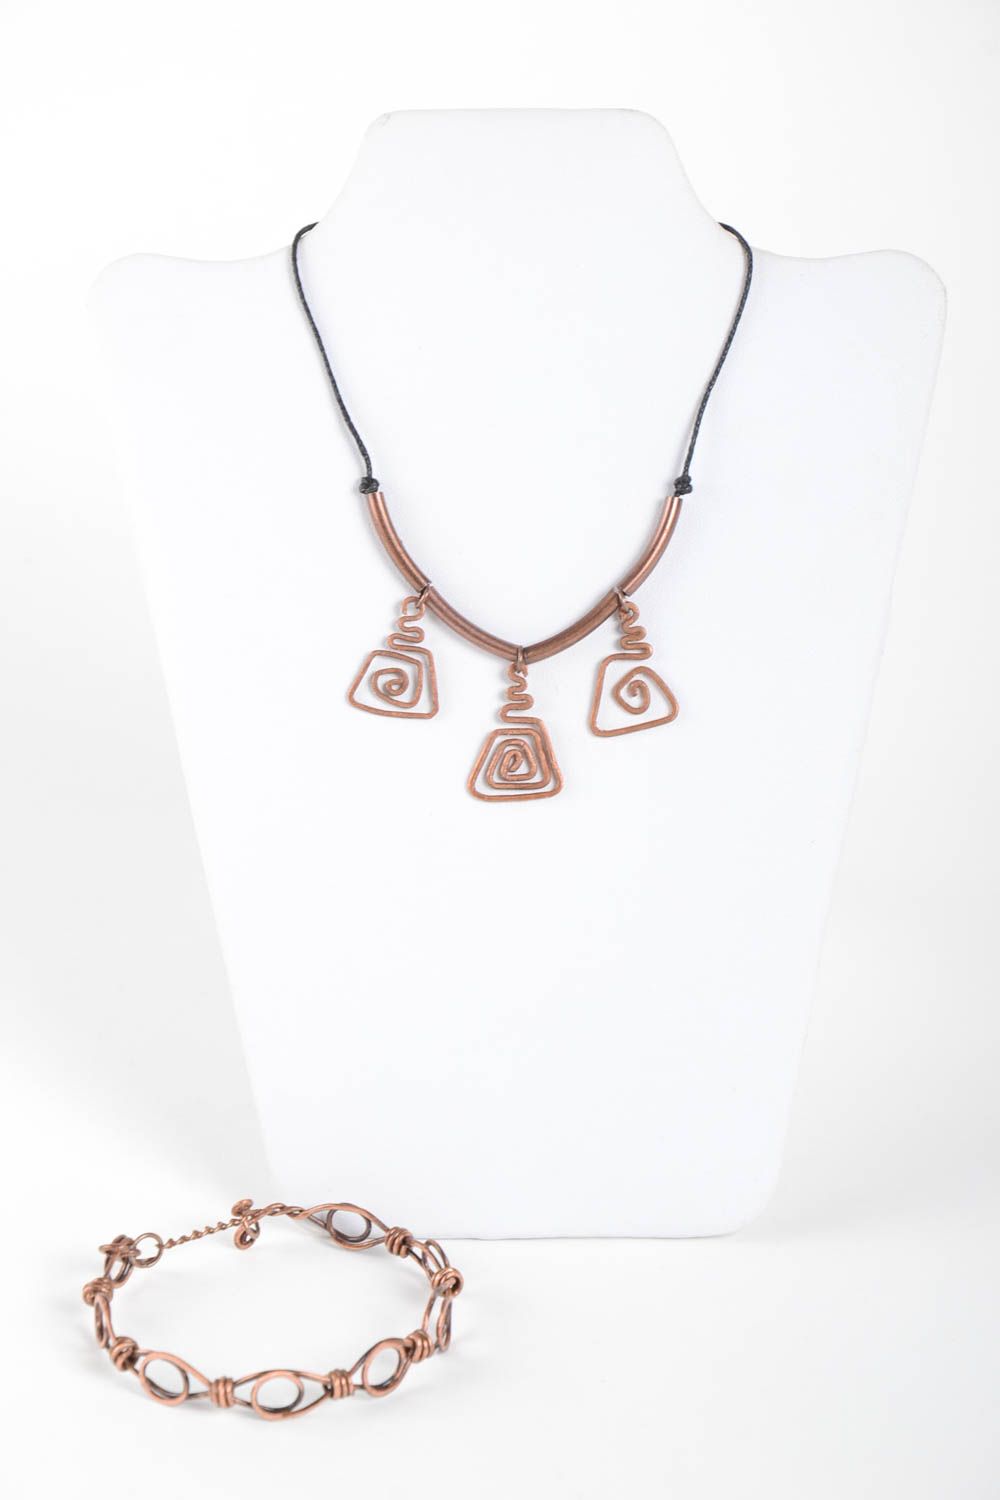 Handmade copper jewelry copper wire pendant copper bracelet copper jewelry photo 2